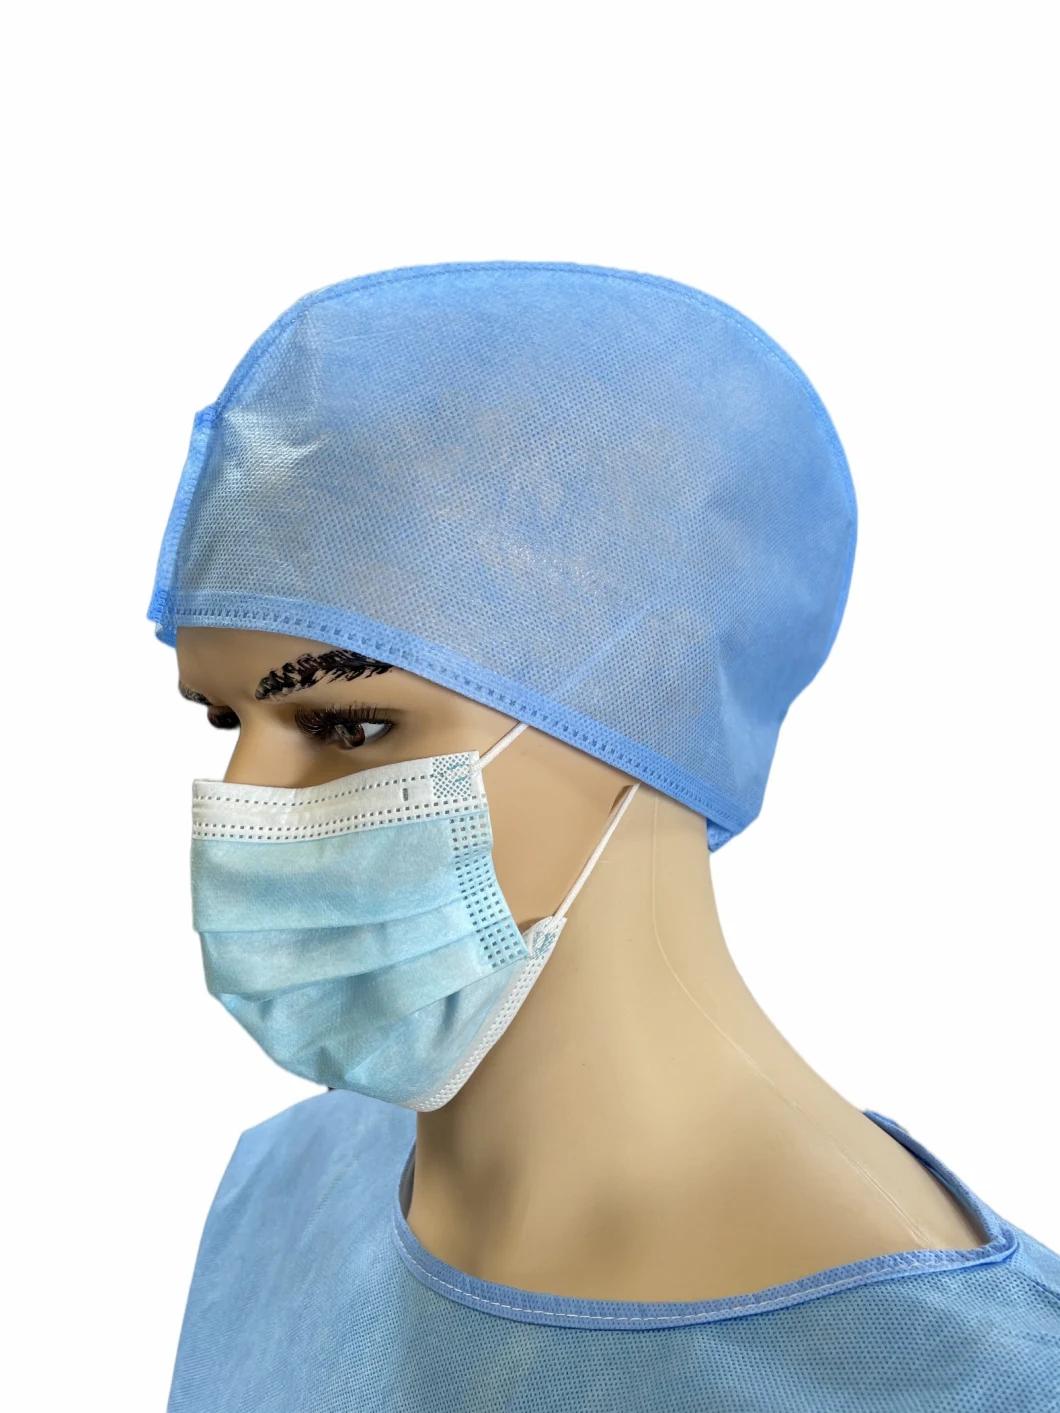 Waterproof Disposable Non Woven Head Cap for Women Doctors